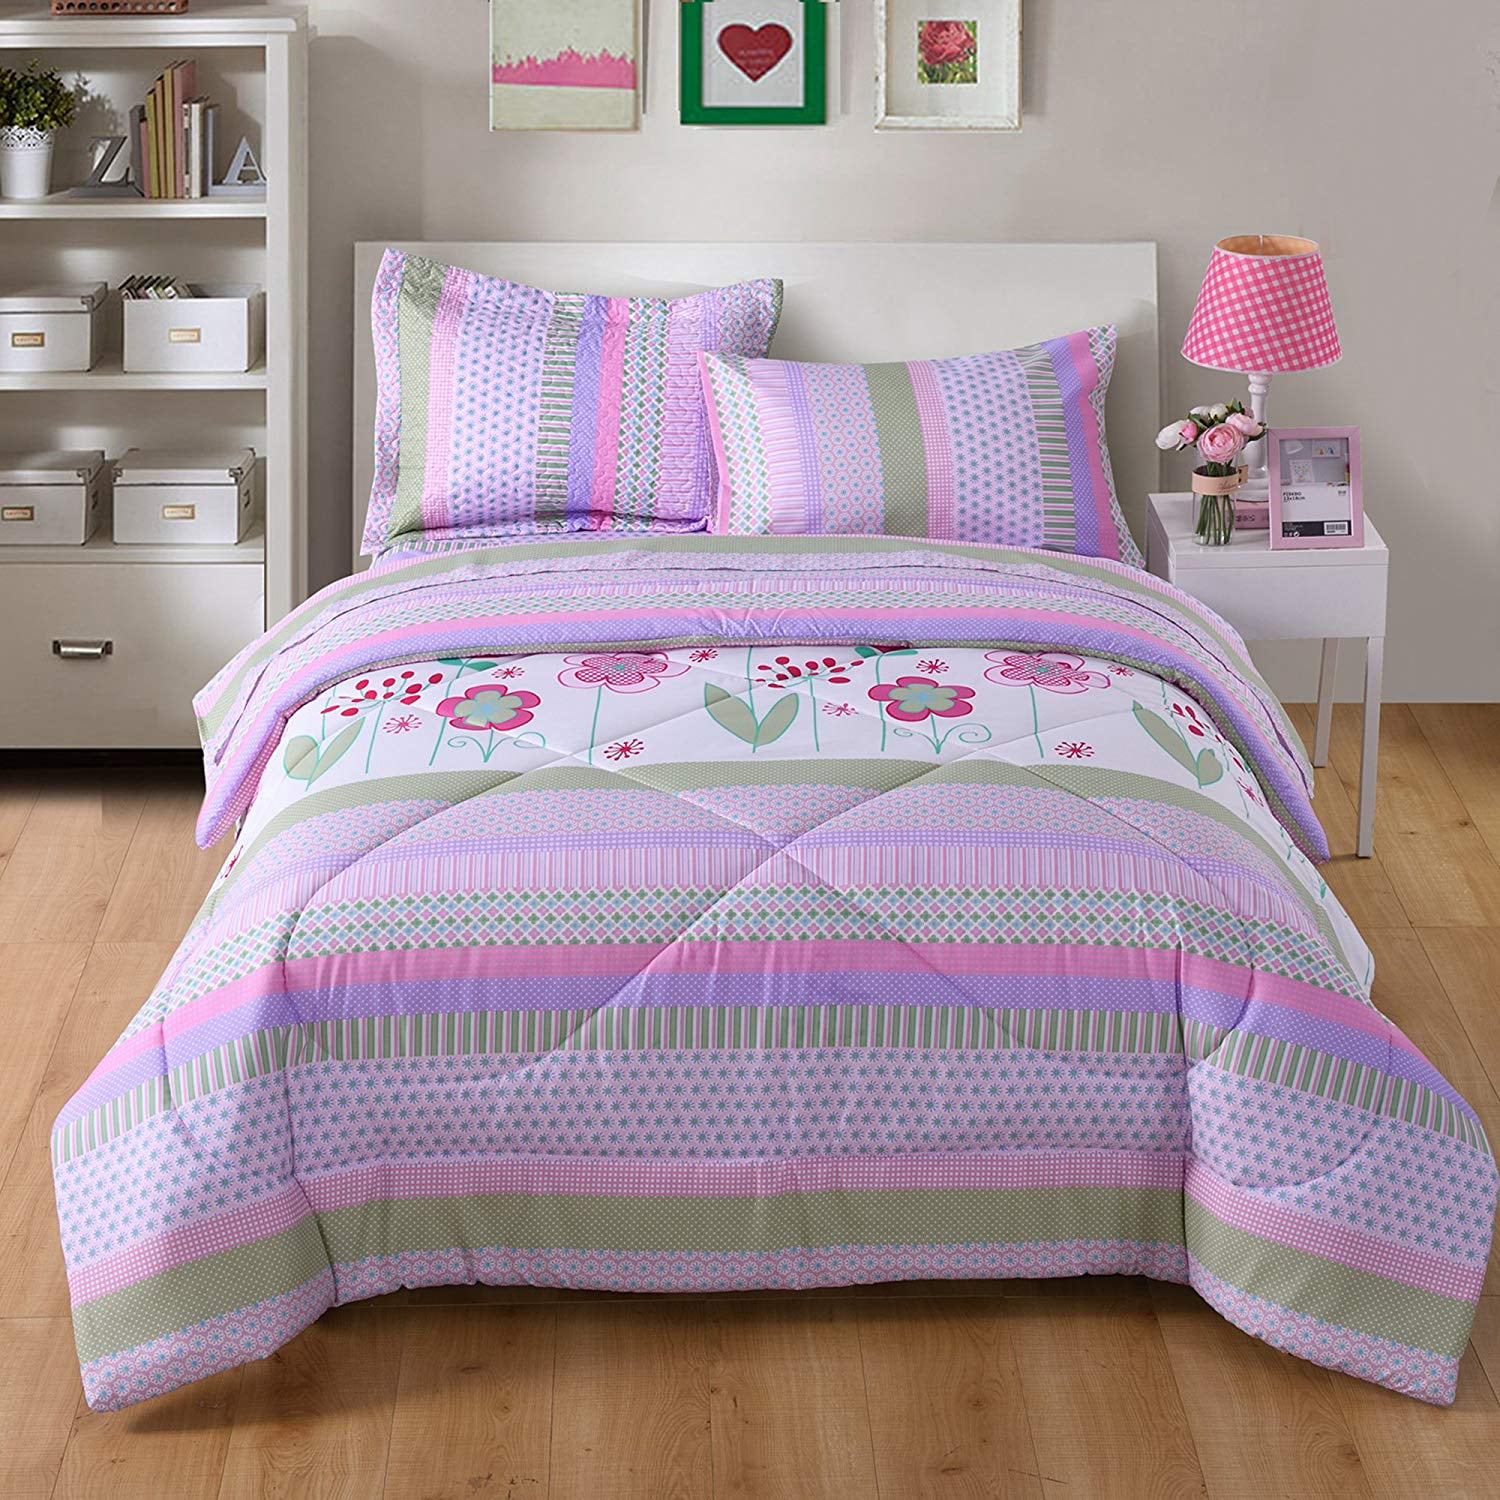 Marcielo Kids Comforter Set Girls, Bunk Bed Comforters Sets